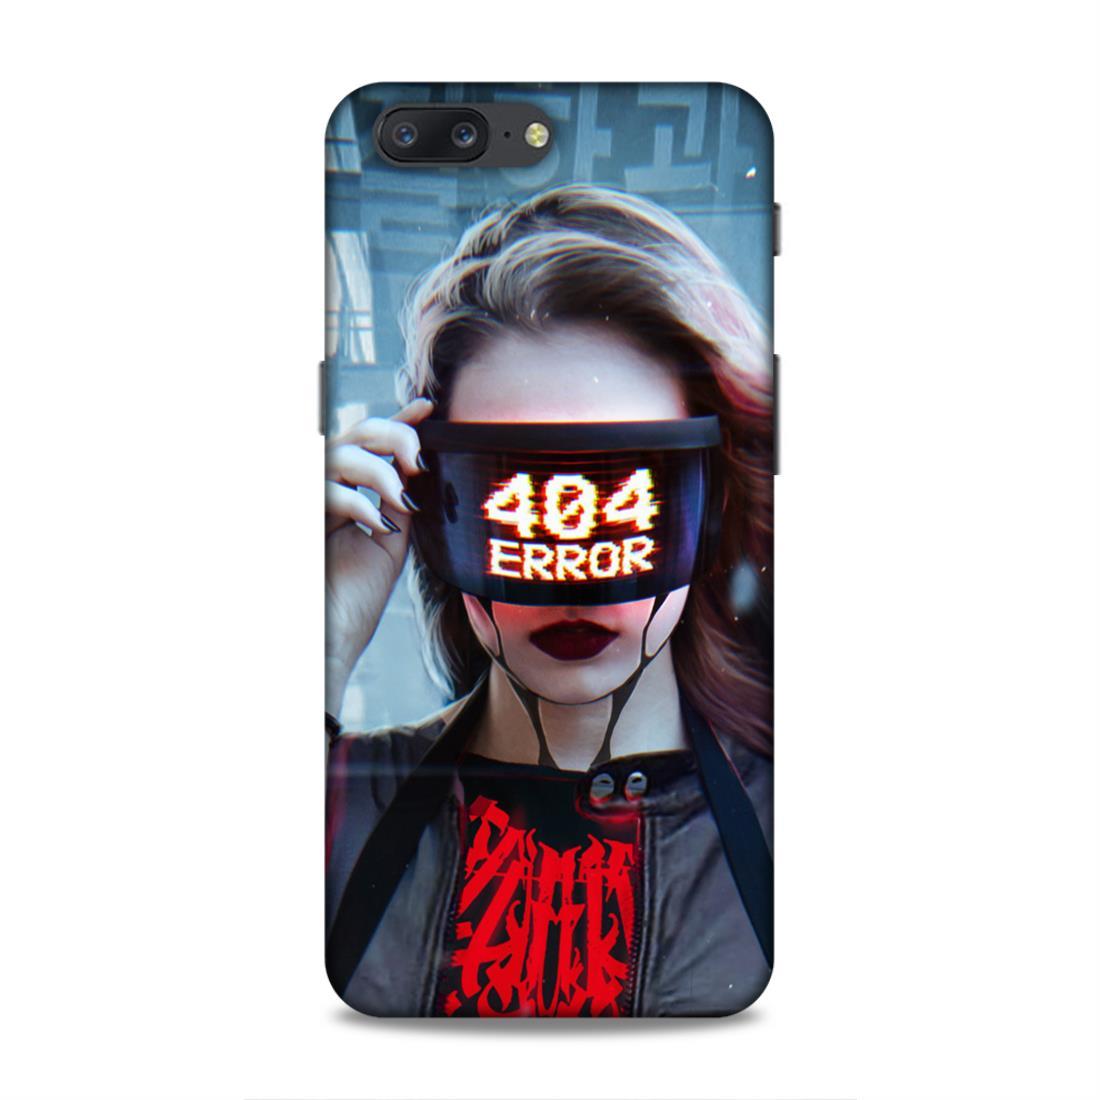 404 Error OnePlus 5 Phone Cover